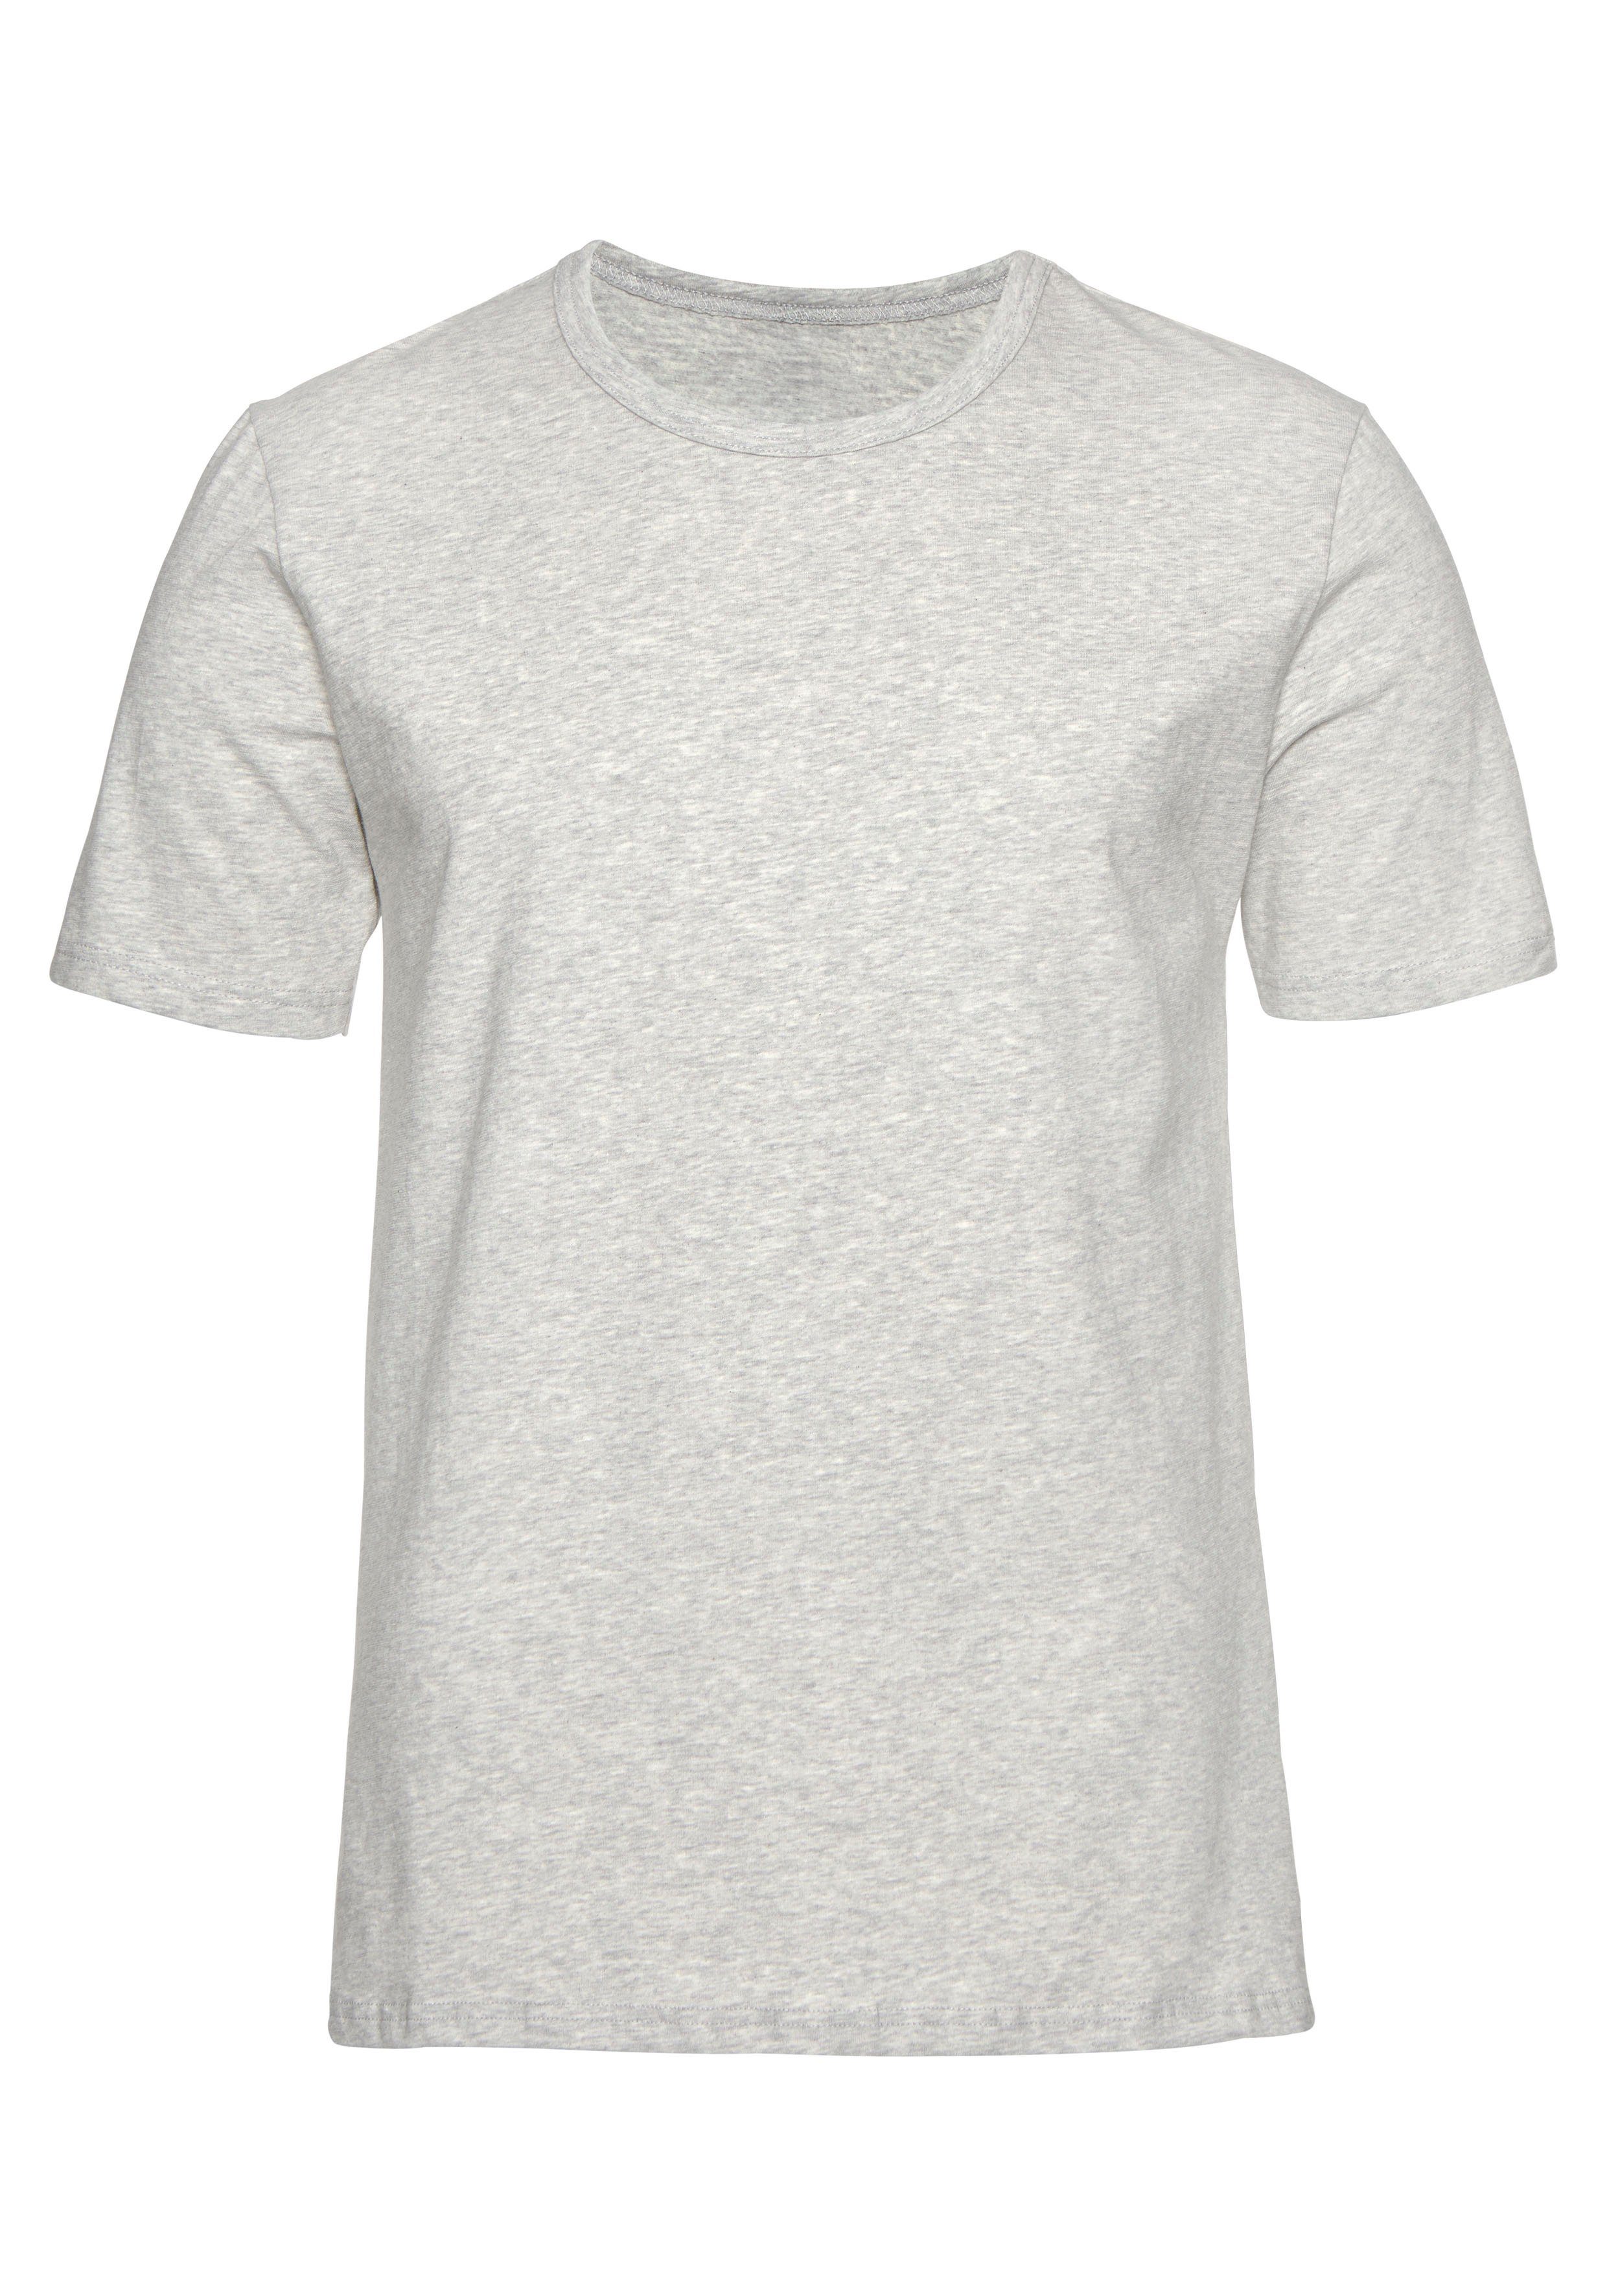 H.I.S perfekt als mit (2er-Pack) T-Shirt Unterziehshirt Rundhalsausschnitt marine, grau-meliert